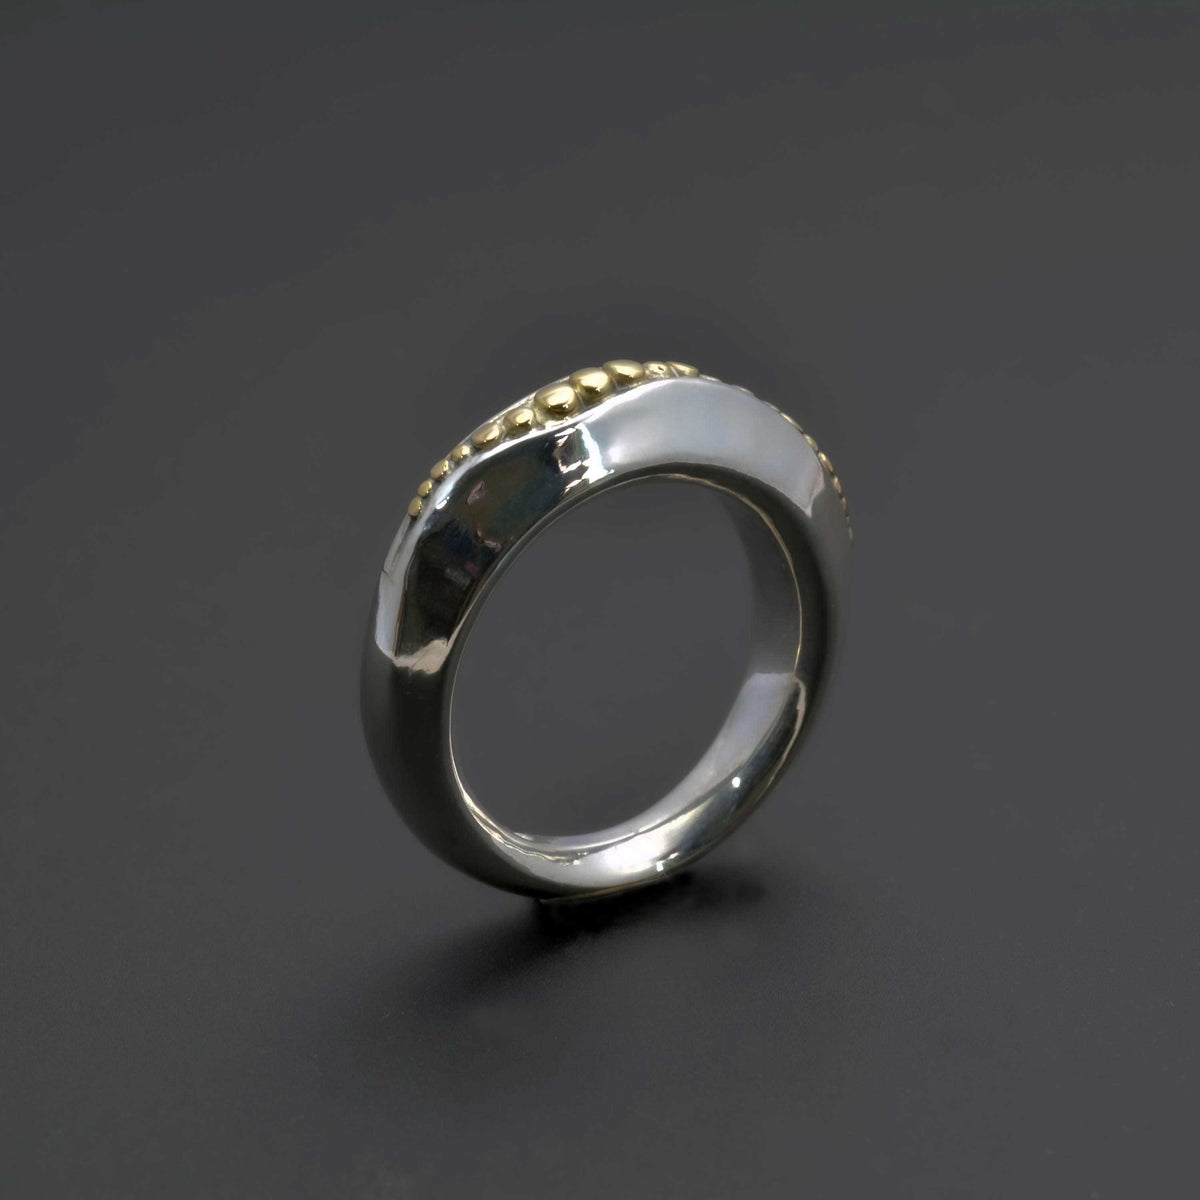 Golden path ring, en elegant en af slagsen ring med 14K guld accent